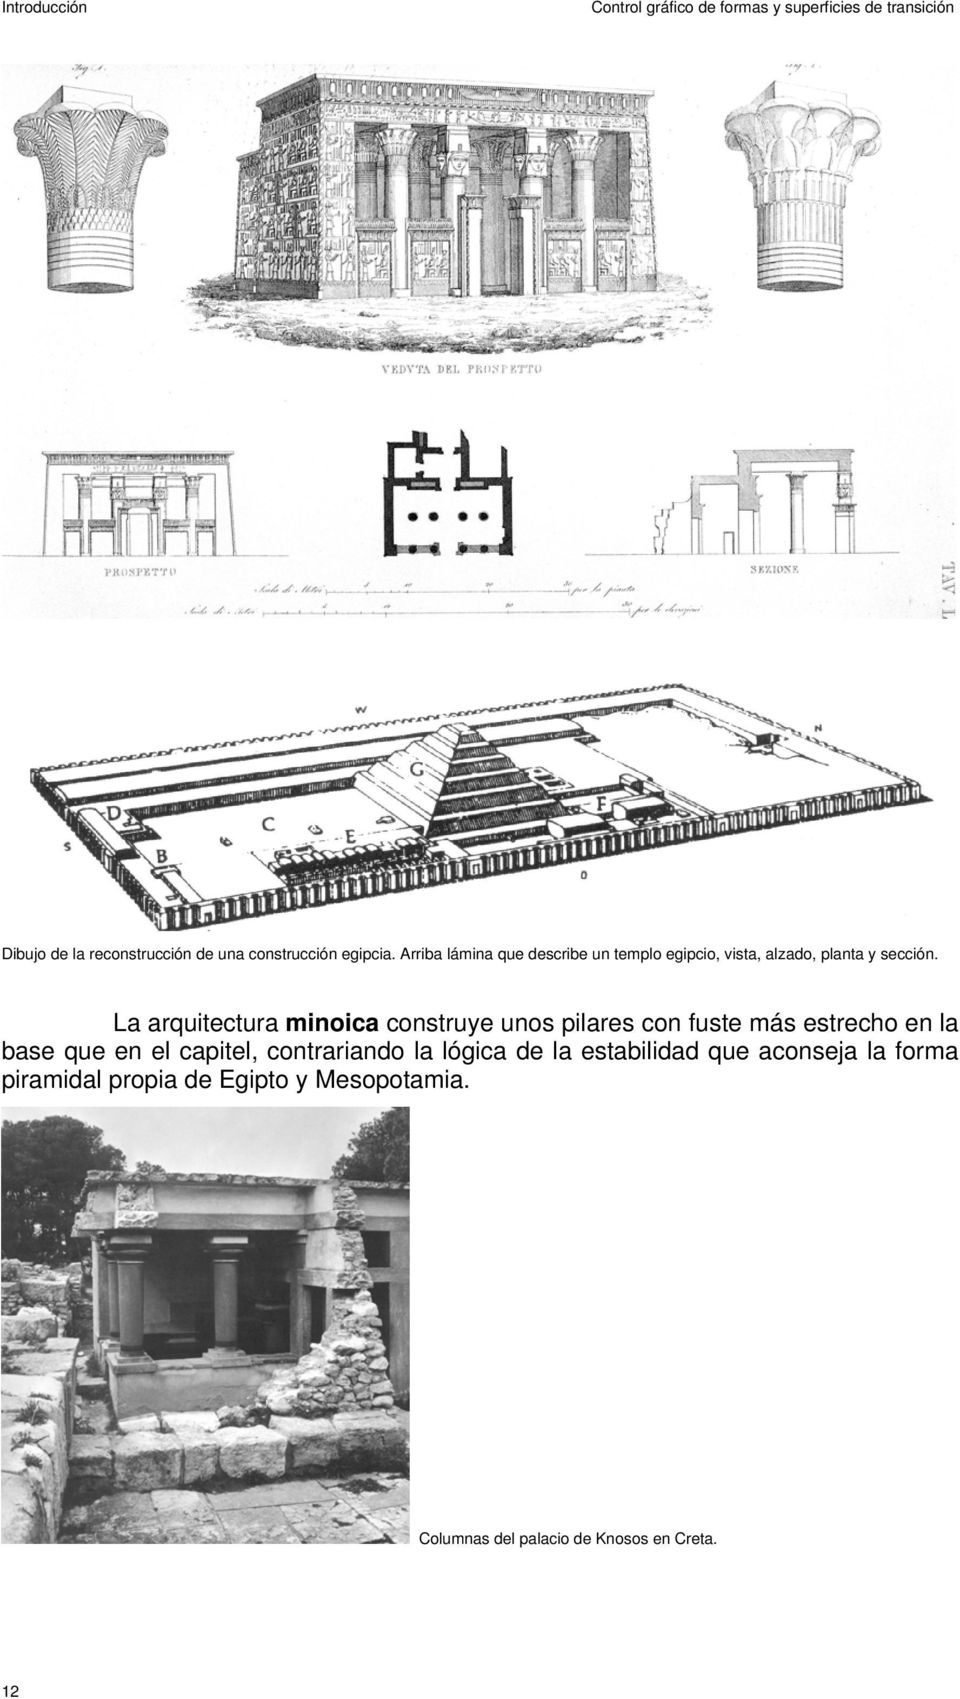 La arquitectura minoica construye unos pilares con fuste más estrecho en la base que en el capitel, contrariando